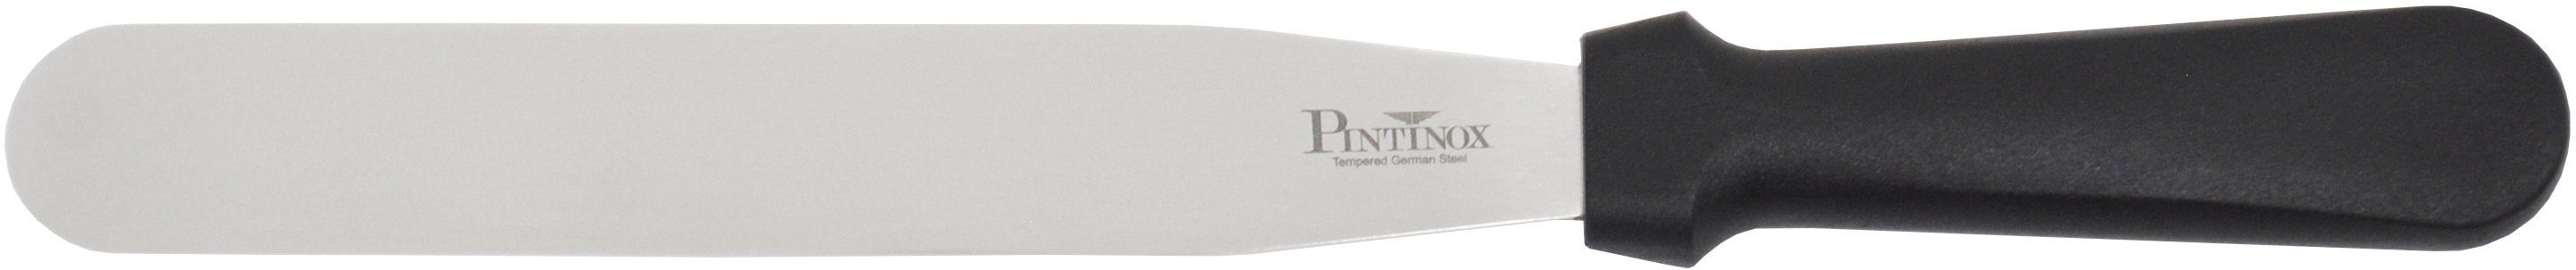 PINTINOX Streichpalette Professional, Spatel spülmaschinengeeignet, cm 25,5 1 Edelstahl, 10,5cm, Spatel 1